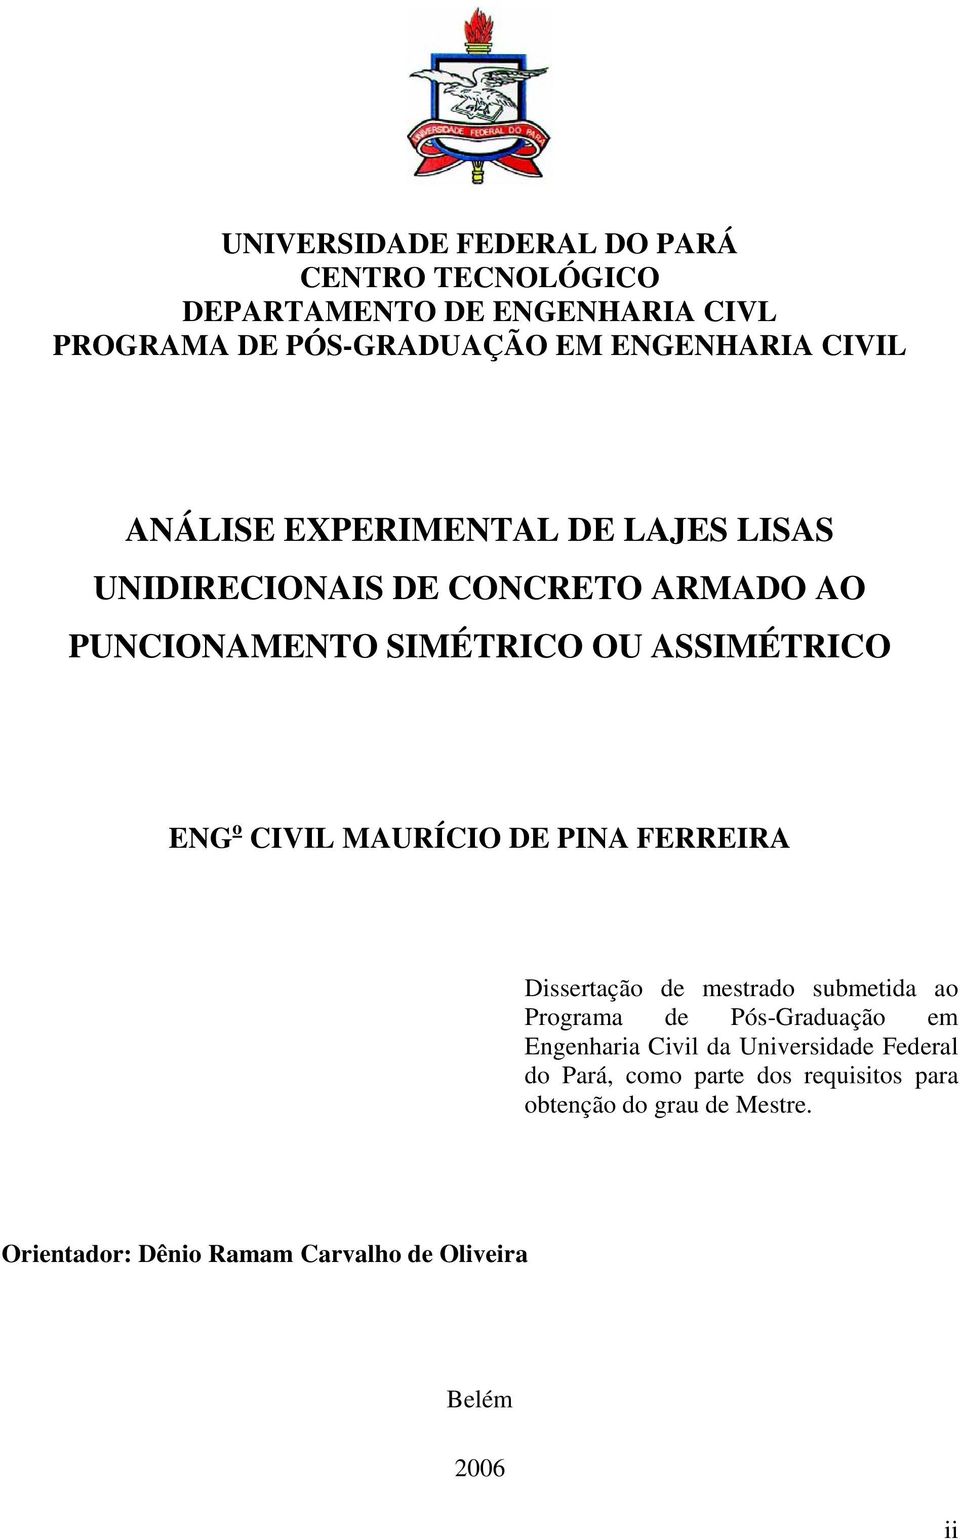 MAURÍCIO DE PINA FERREIRA Dissertação de mestrado submetida ao Programa de Pós-Graduação em Engenharia Civil da Universidade